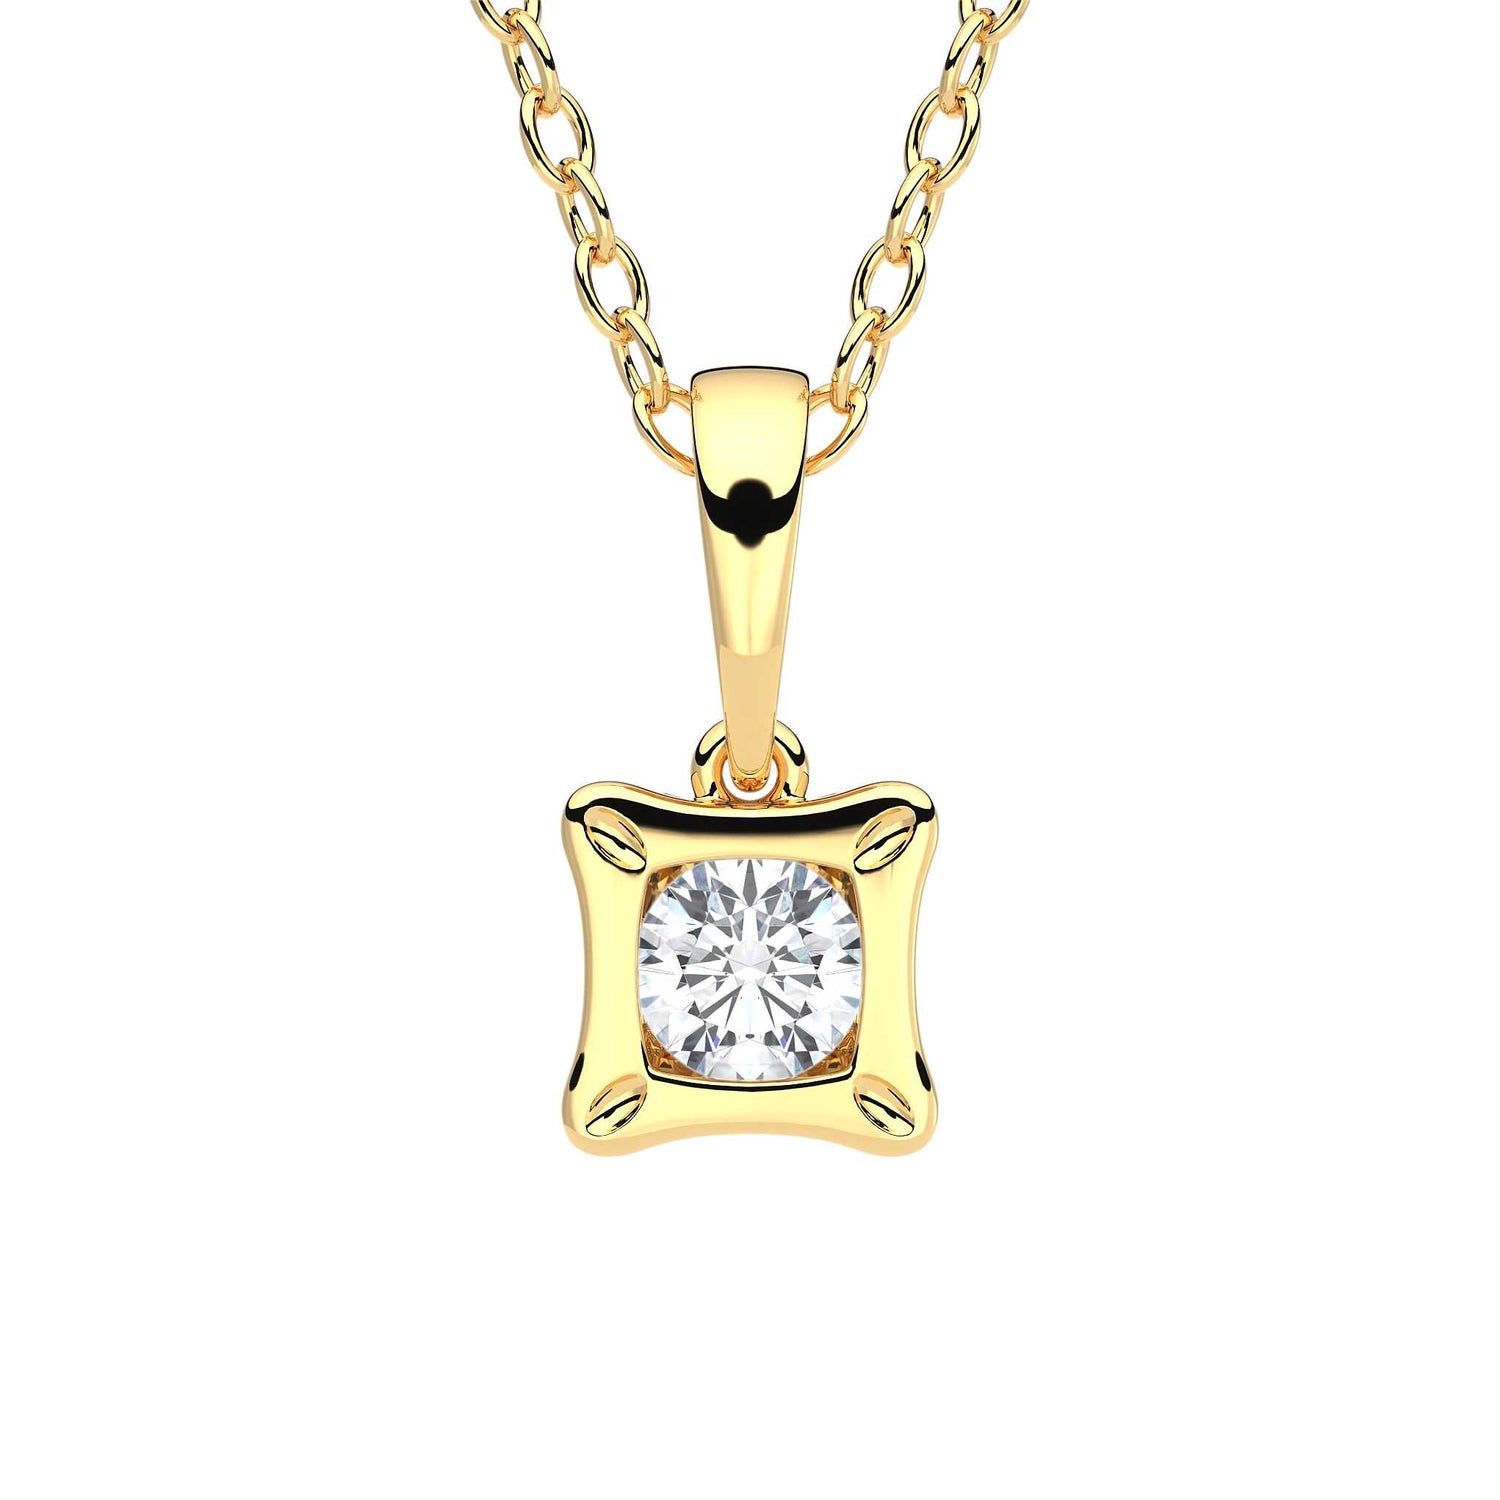 Suokko Timanttikorut -riipus keltakultaa, jossa istutettuna yksi timantti. Tuotekoodi KP05922